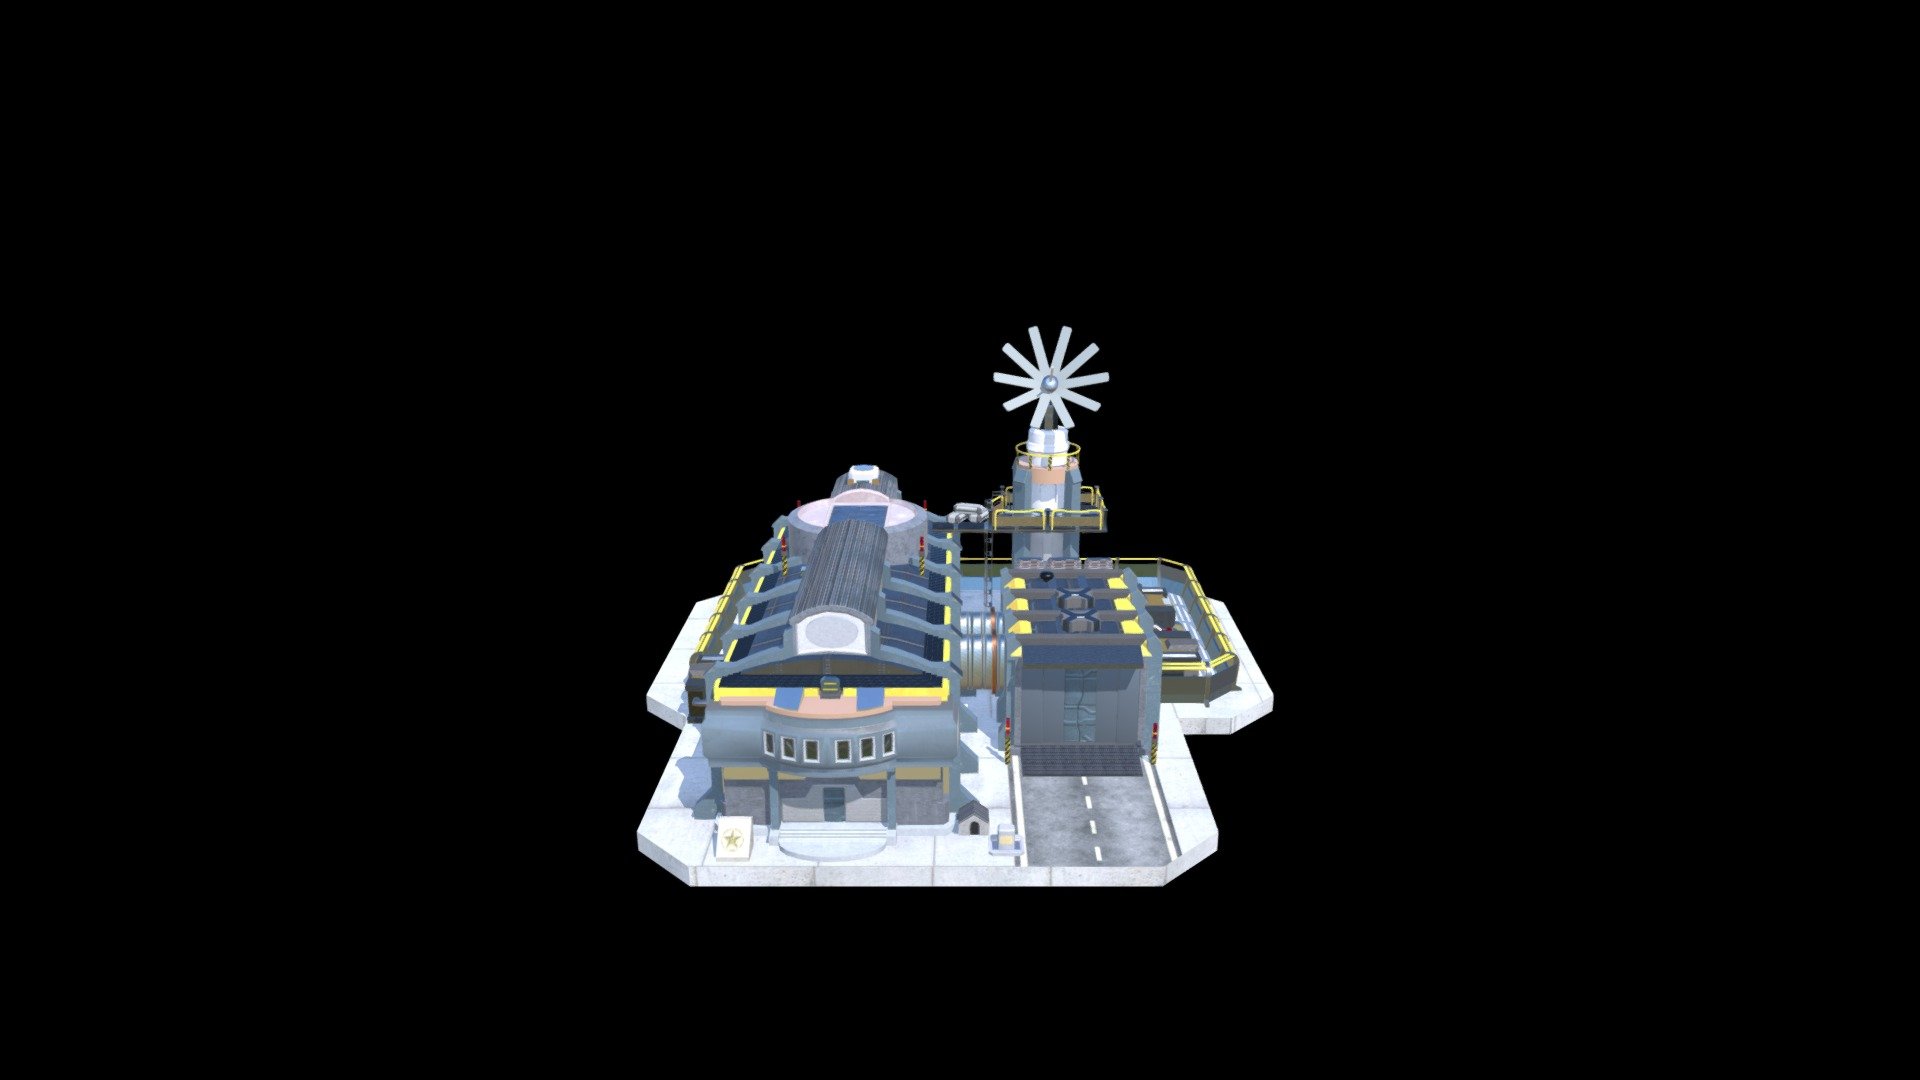 EU Command Center 100 - 3D model by papashanorm 3d model